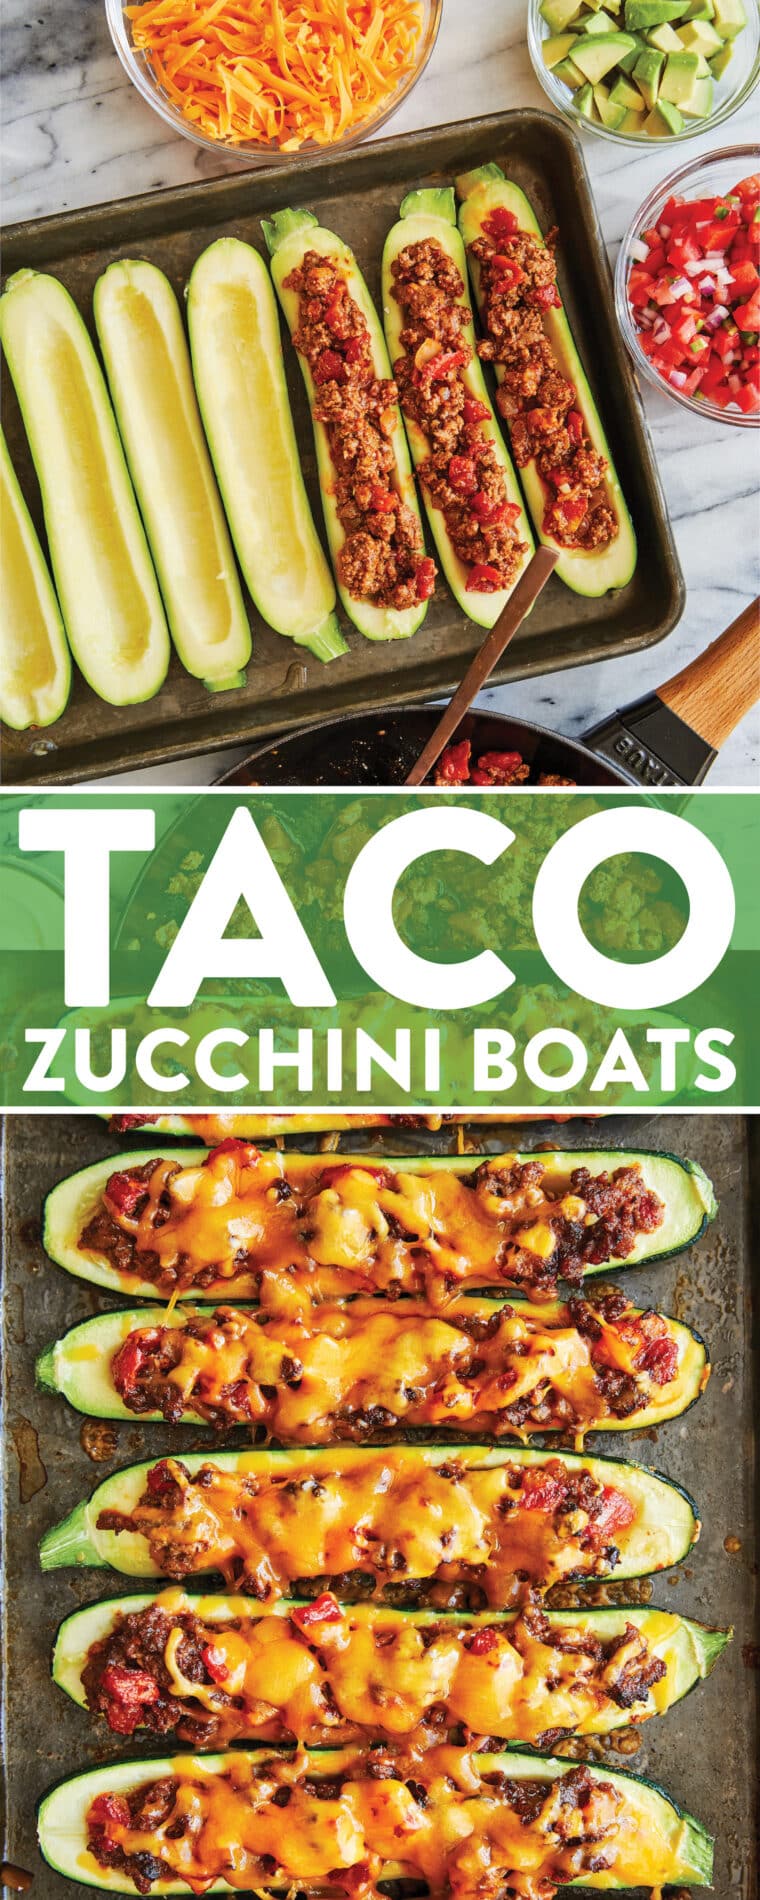 Taco Zucchini Boats — рецепт обеда с низким содержанием углеводов для всей семьи! Начиненные говяжьим фаршем и приправой для тако, запеченные до сырного совершенства.